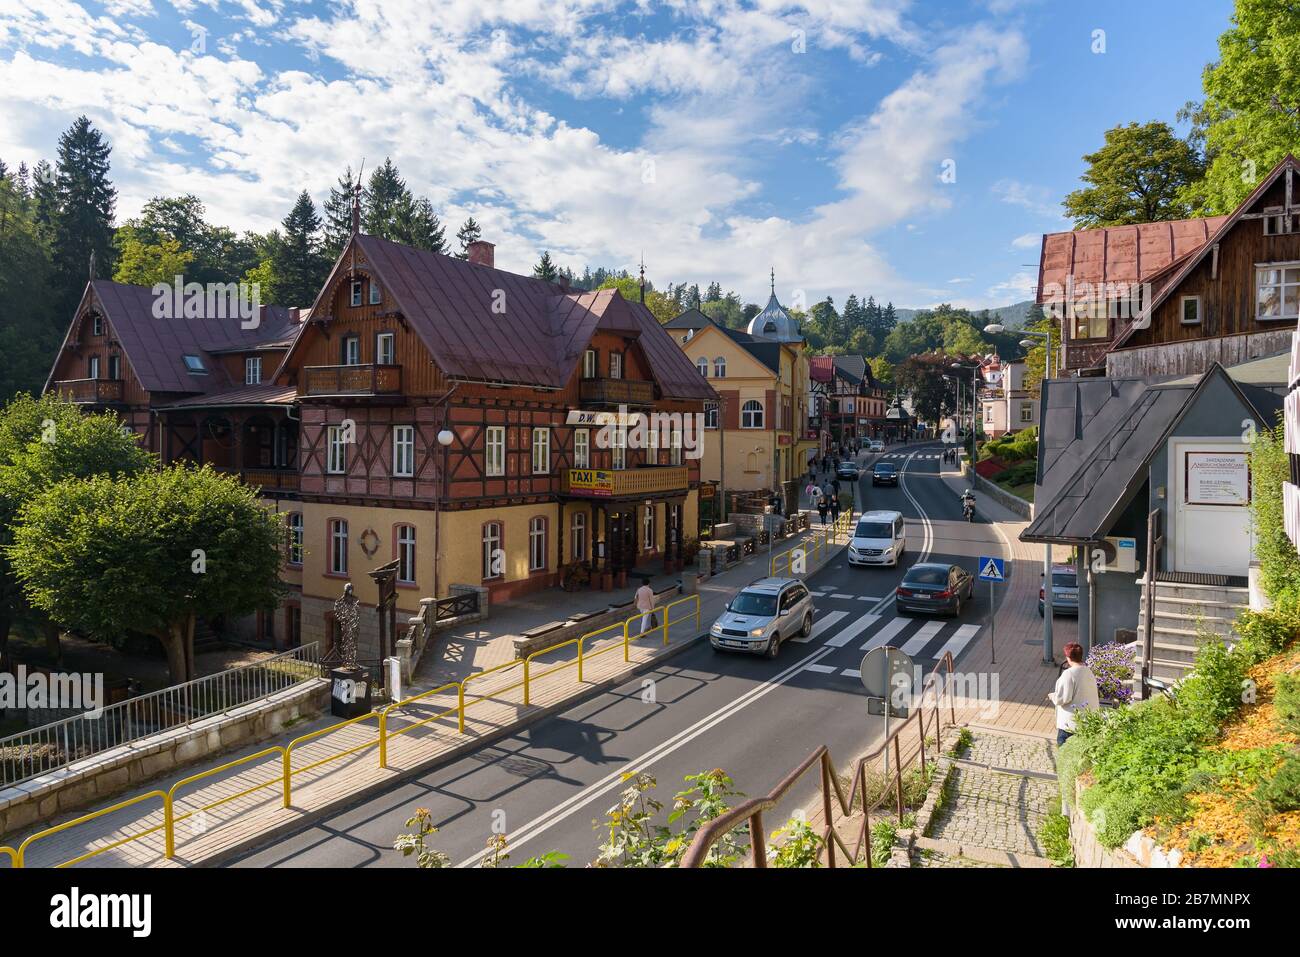 Szklarska Poreba, Poland - September 12, 2019: View of the main street of Szklarska Poreba town, well known tourist resort in Giant Mountains Stock Photo